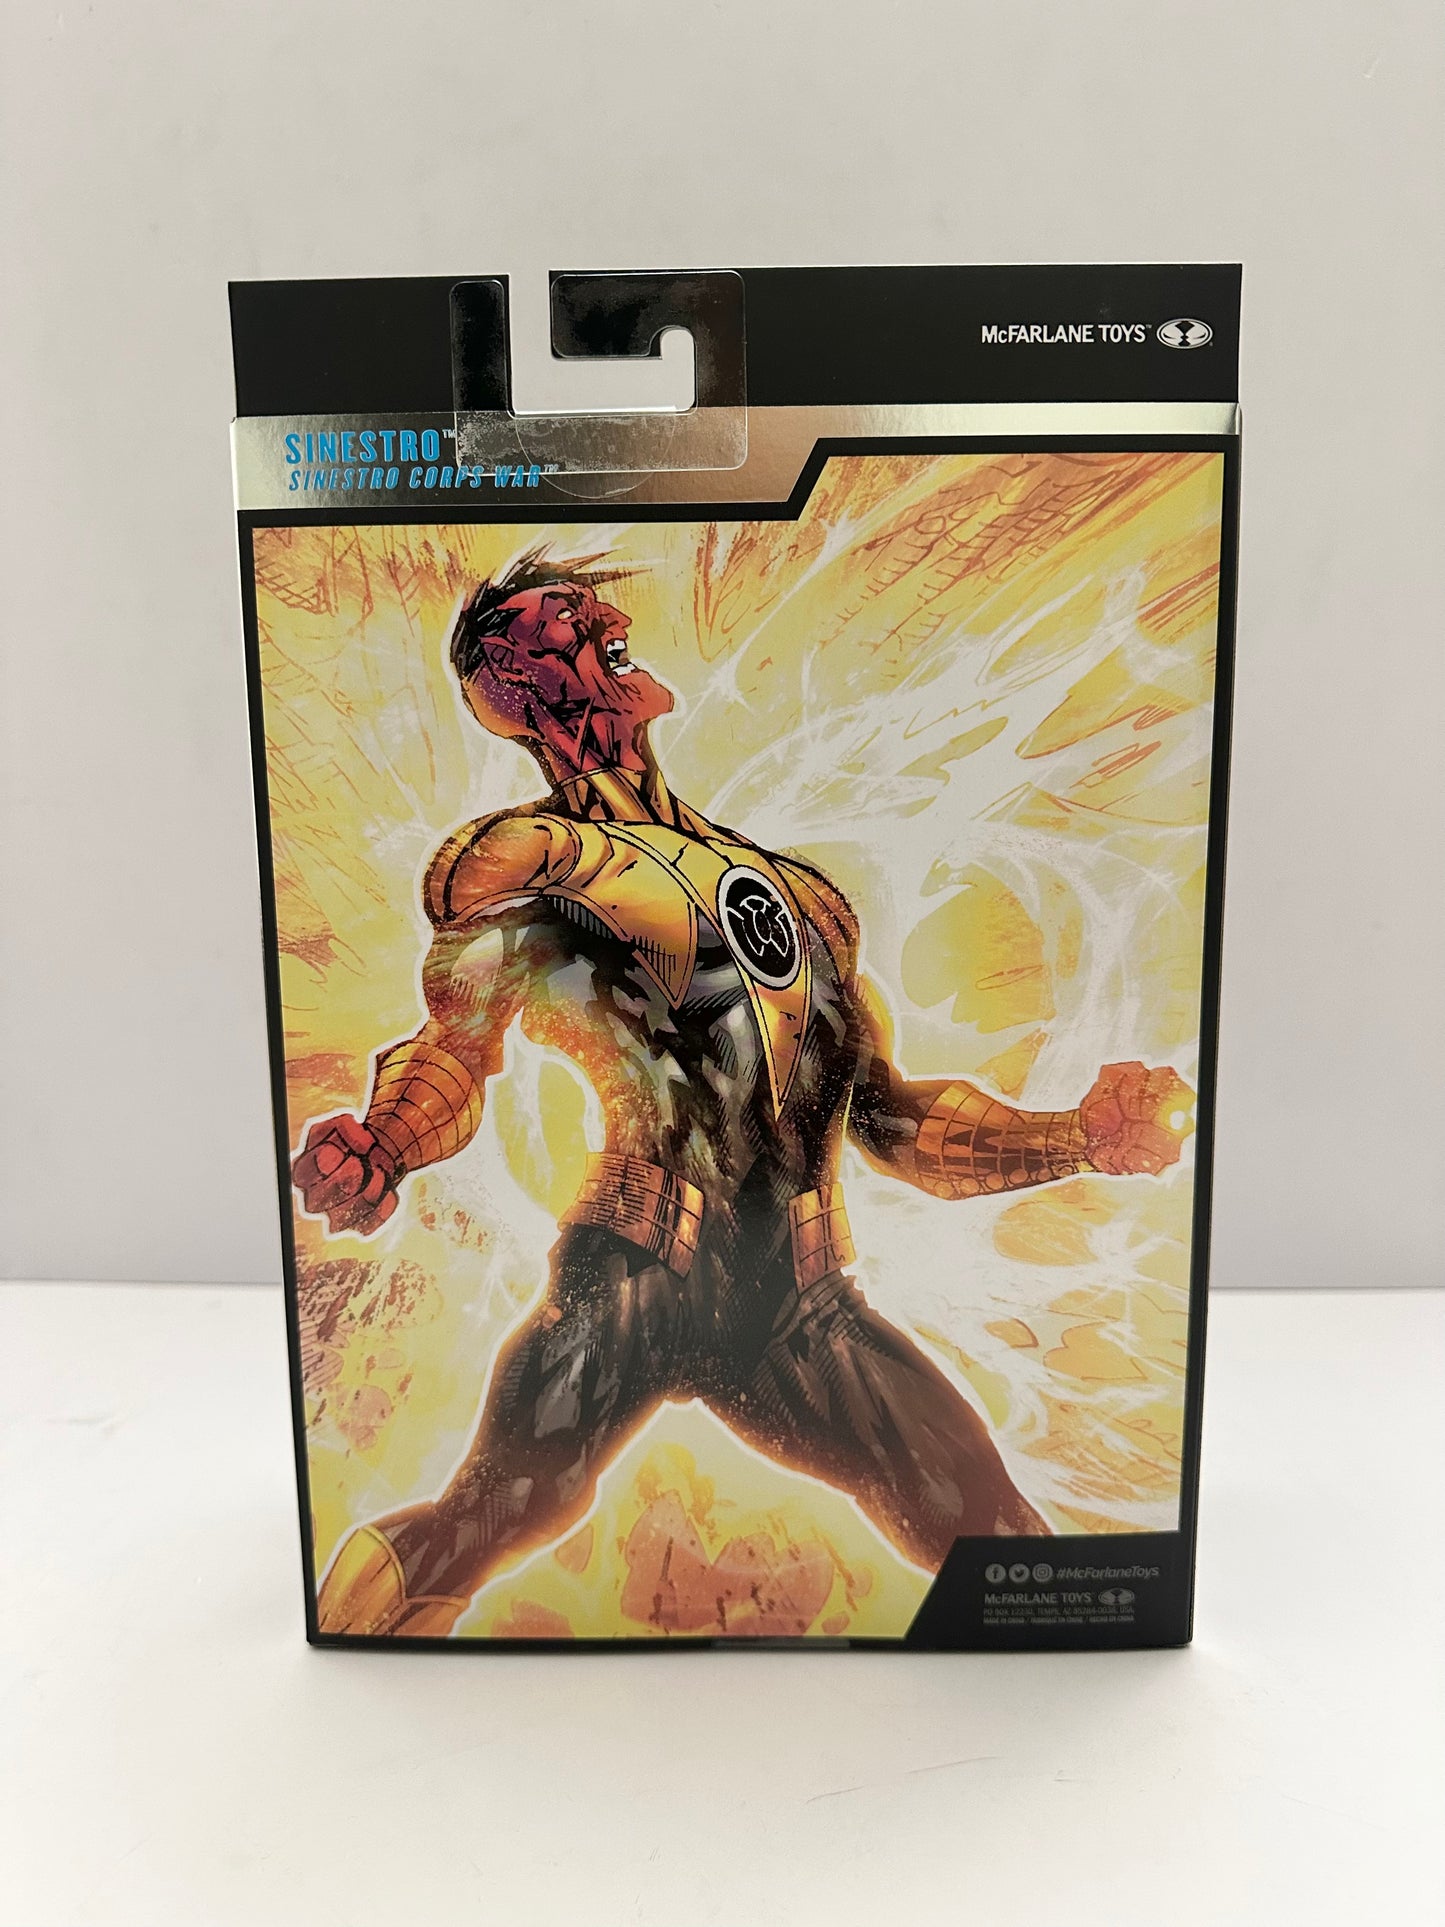 DC Multiverse Collector Edition Sinestro